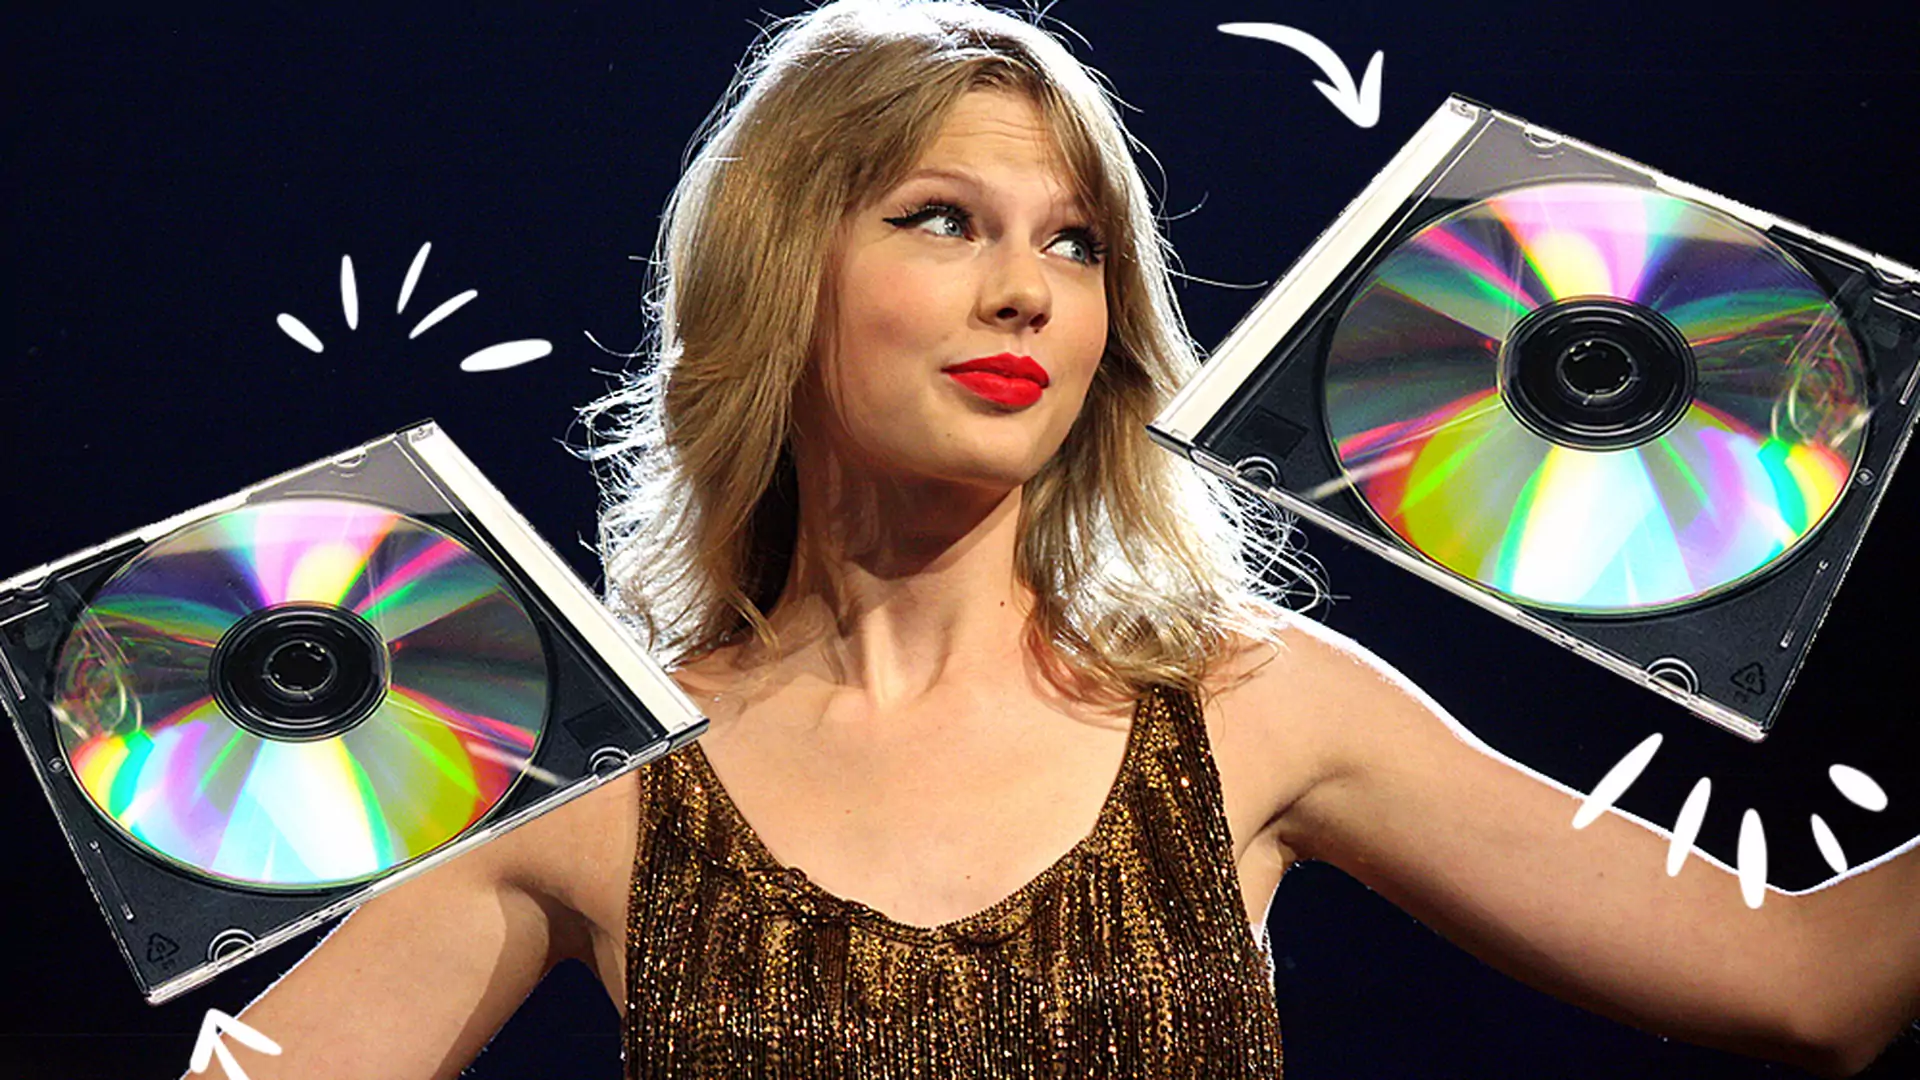 O czym może być nowa płyta Taylor Swift? Tym razem nie są to byli faceci